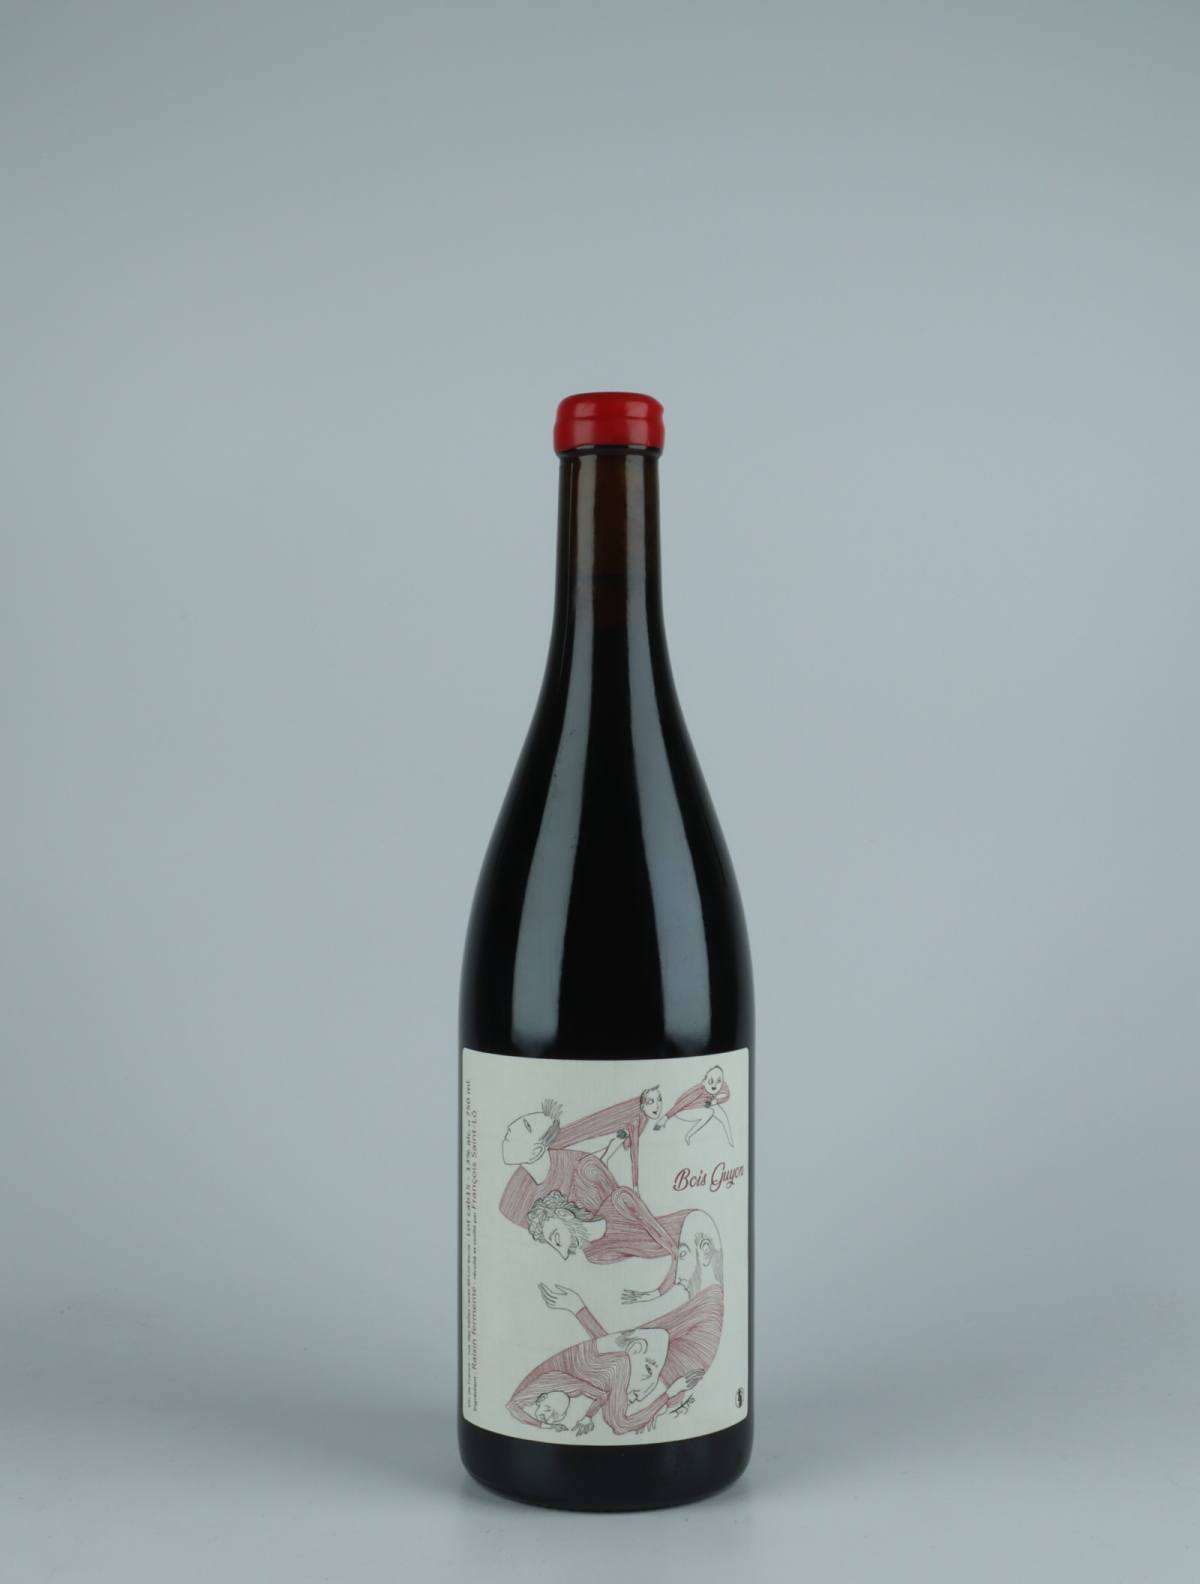 A bottle 2015 Bois Guyon Red wine from François Saint-Lô, Loire in France